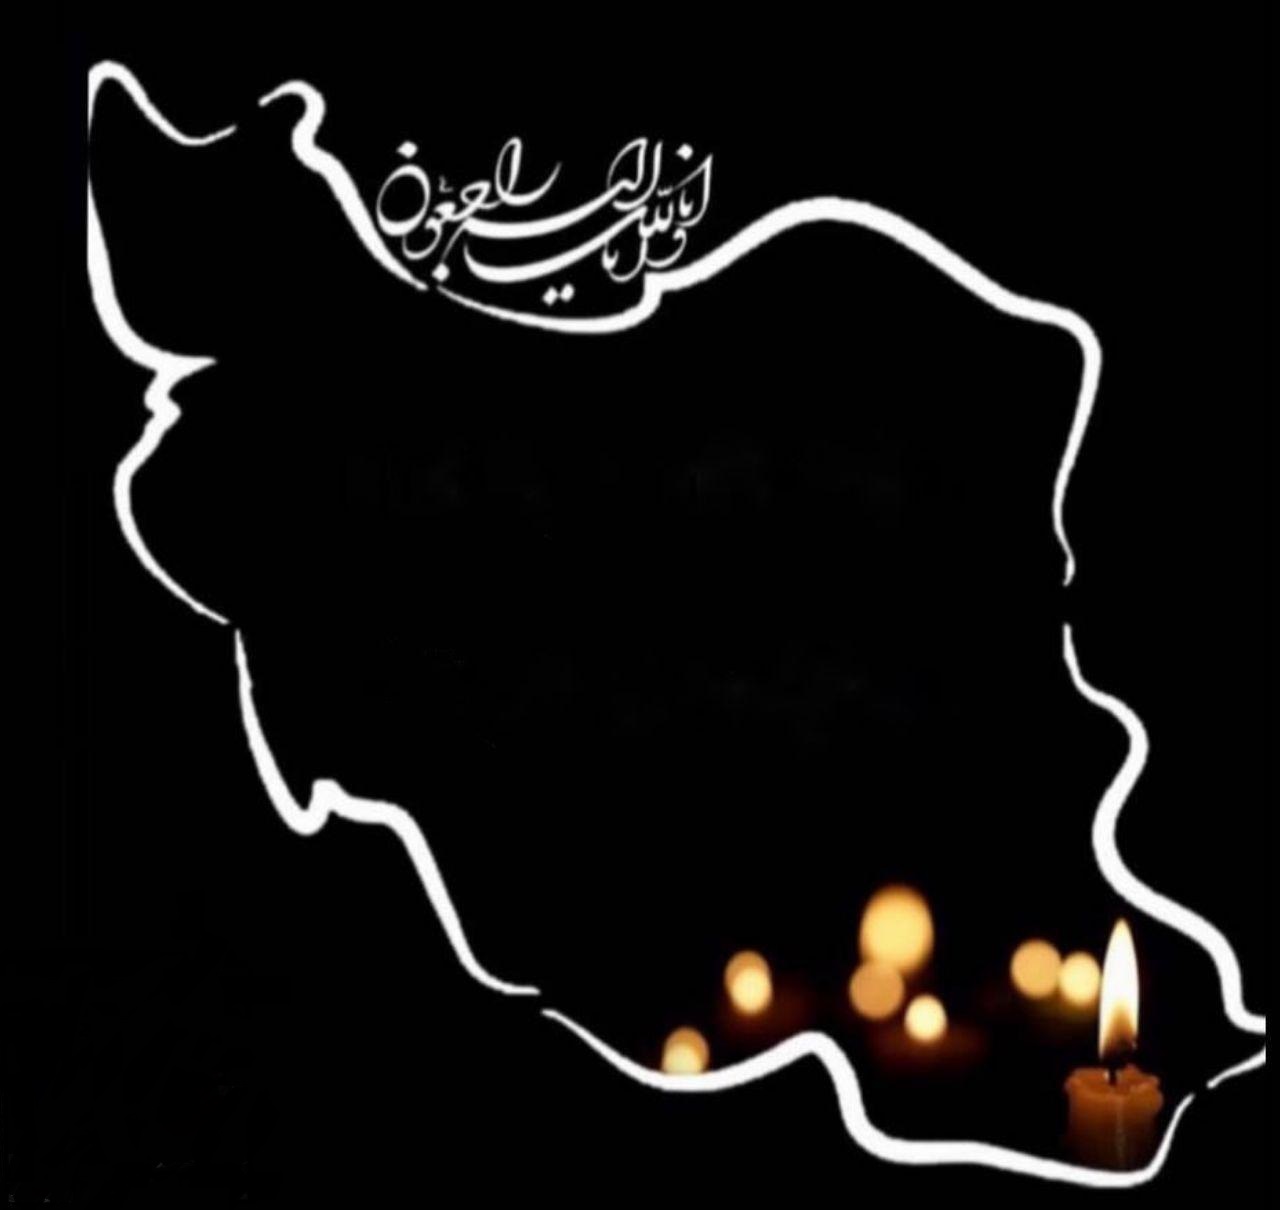 عکس نقشه سیاه ایران با شمع با نوشته انا لله برای تسلیت 